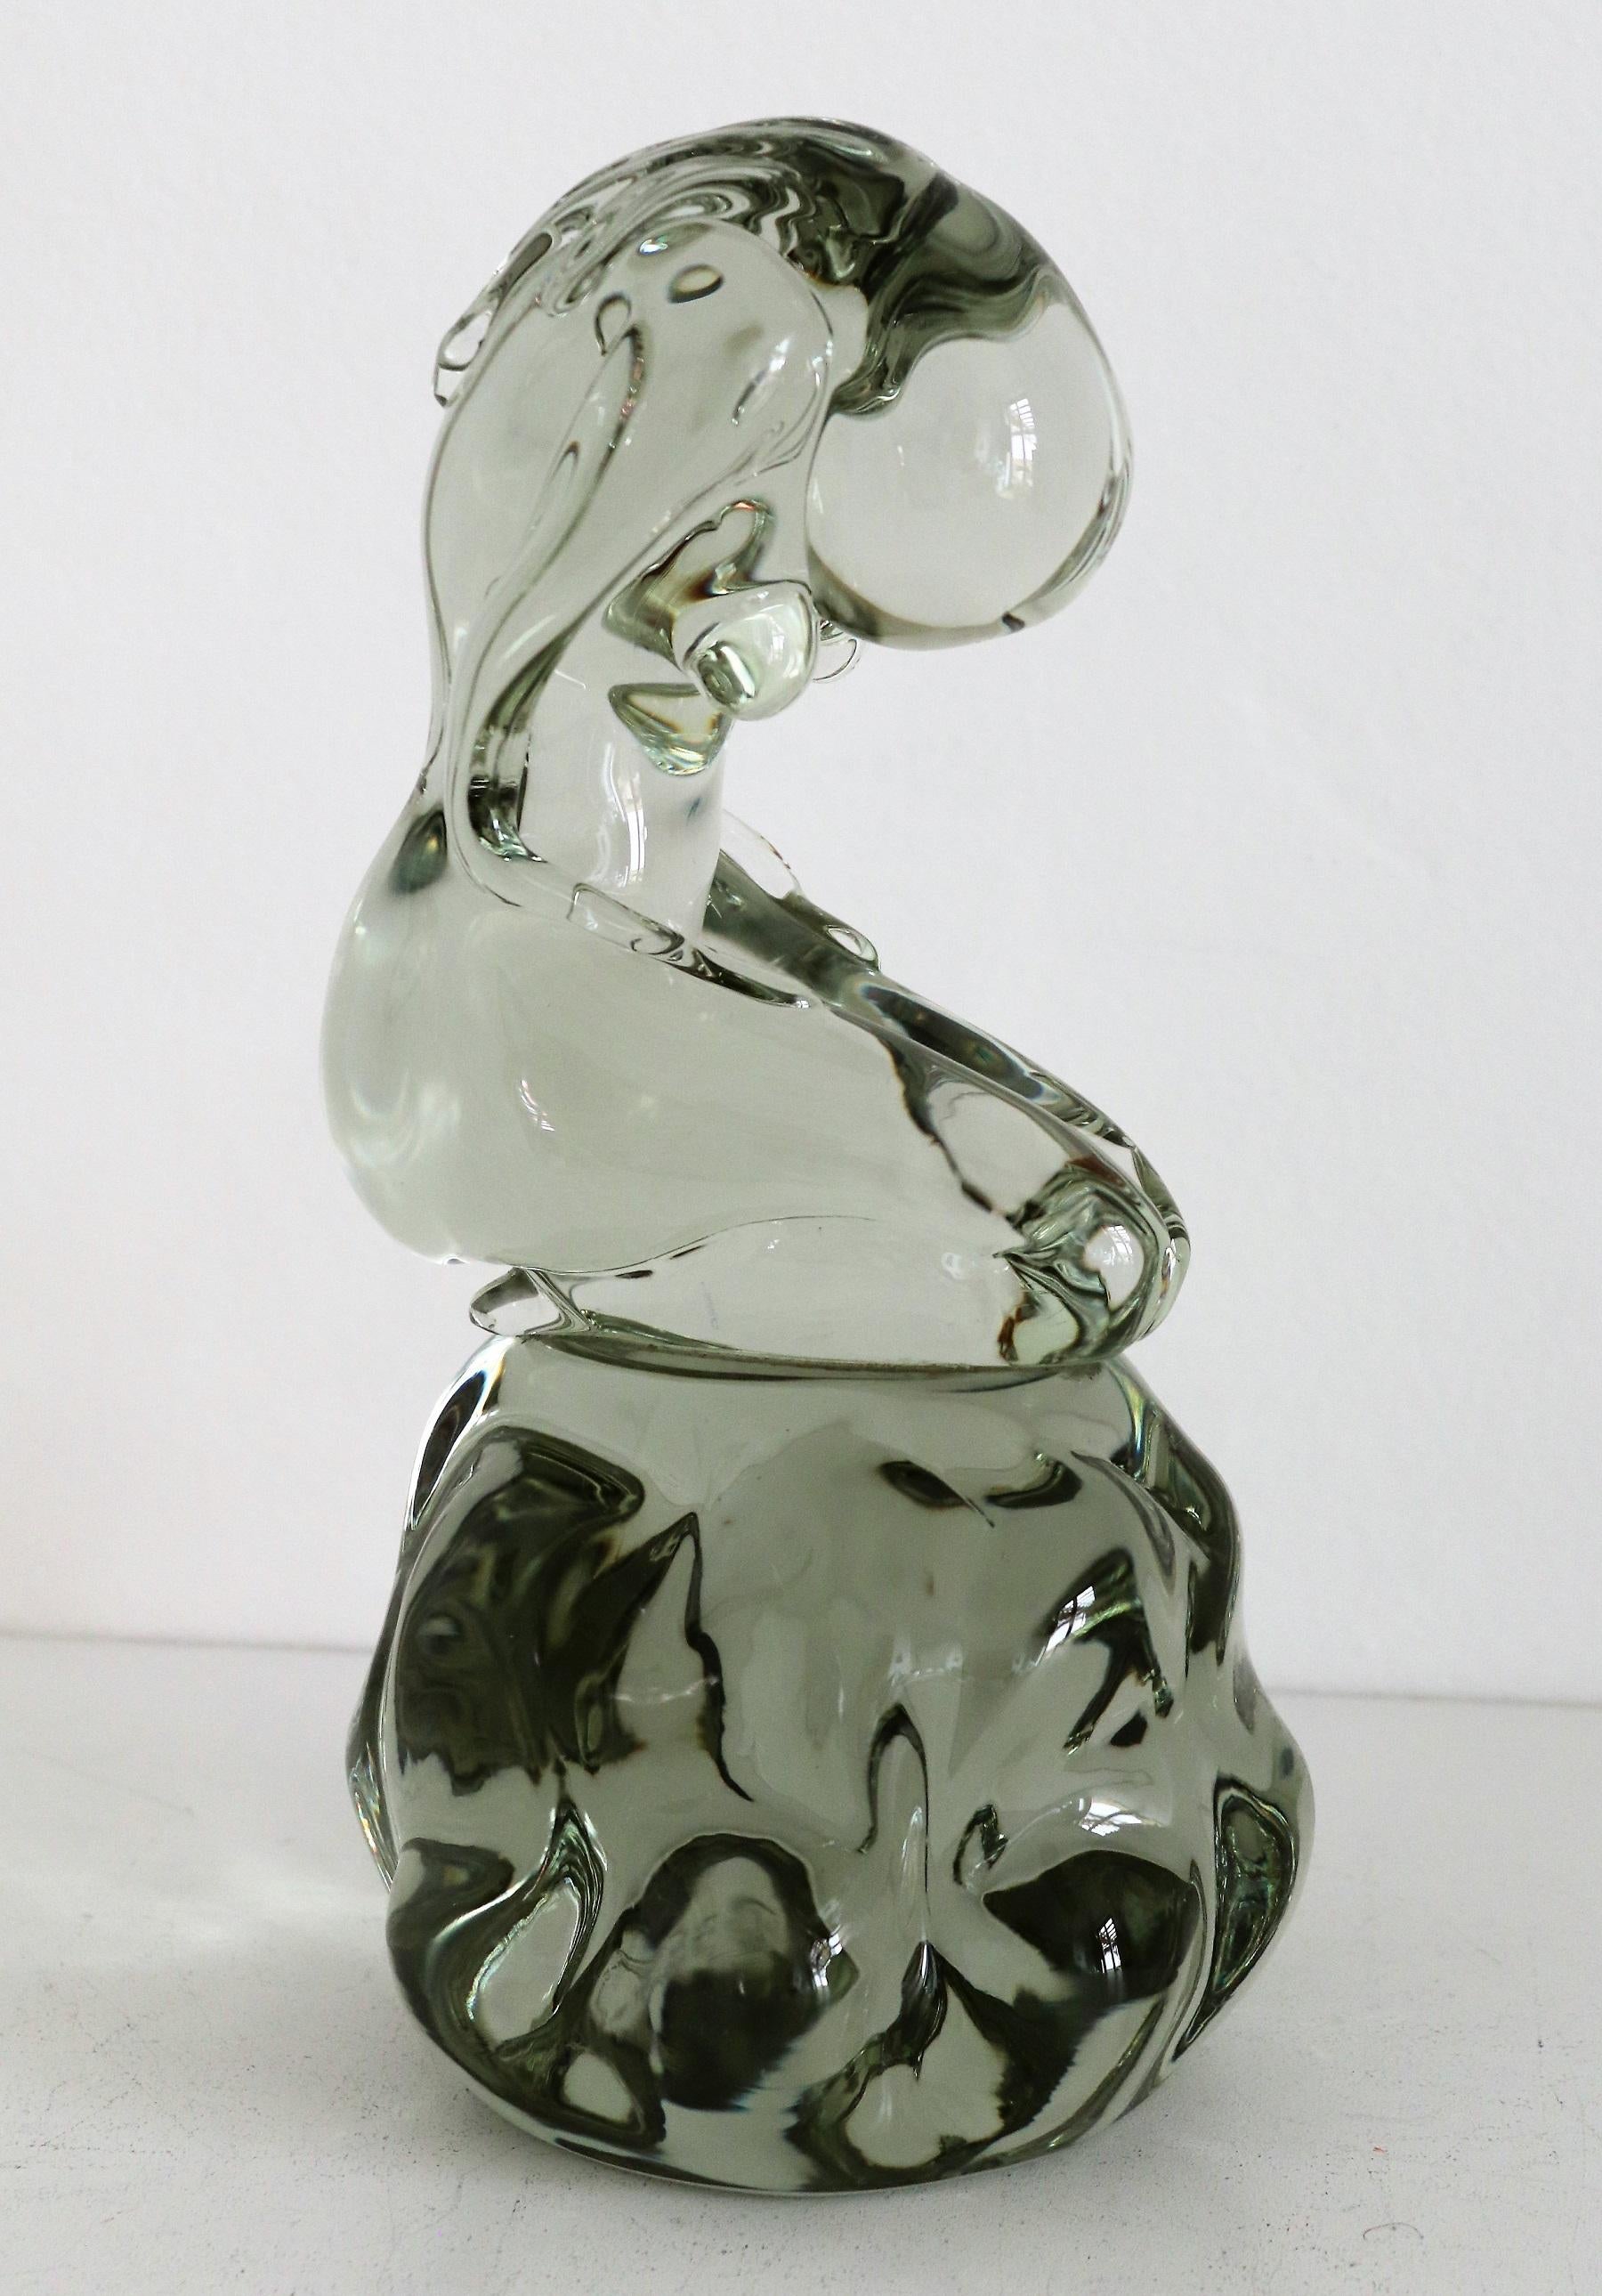 Magnifique sculpture en verre réalisée par le maître verrier italien de Murano, Pino Signoretto, dans les années 1980.
La sculpture représente une femme aux cheveux longs, agenouillée, la tête inclinée. Ses bras reposent sur ses jambes.
La sculpture